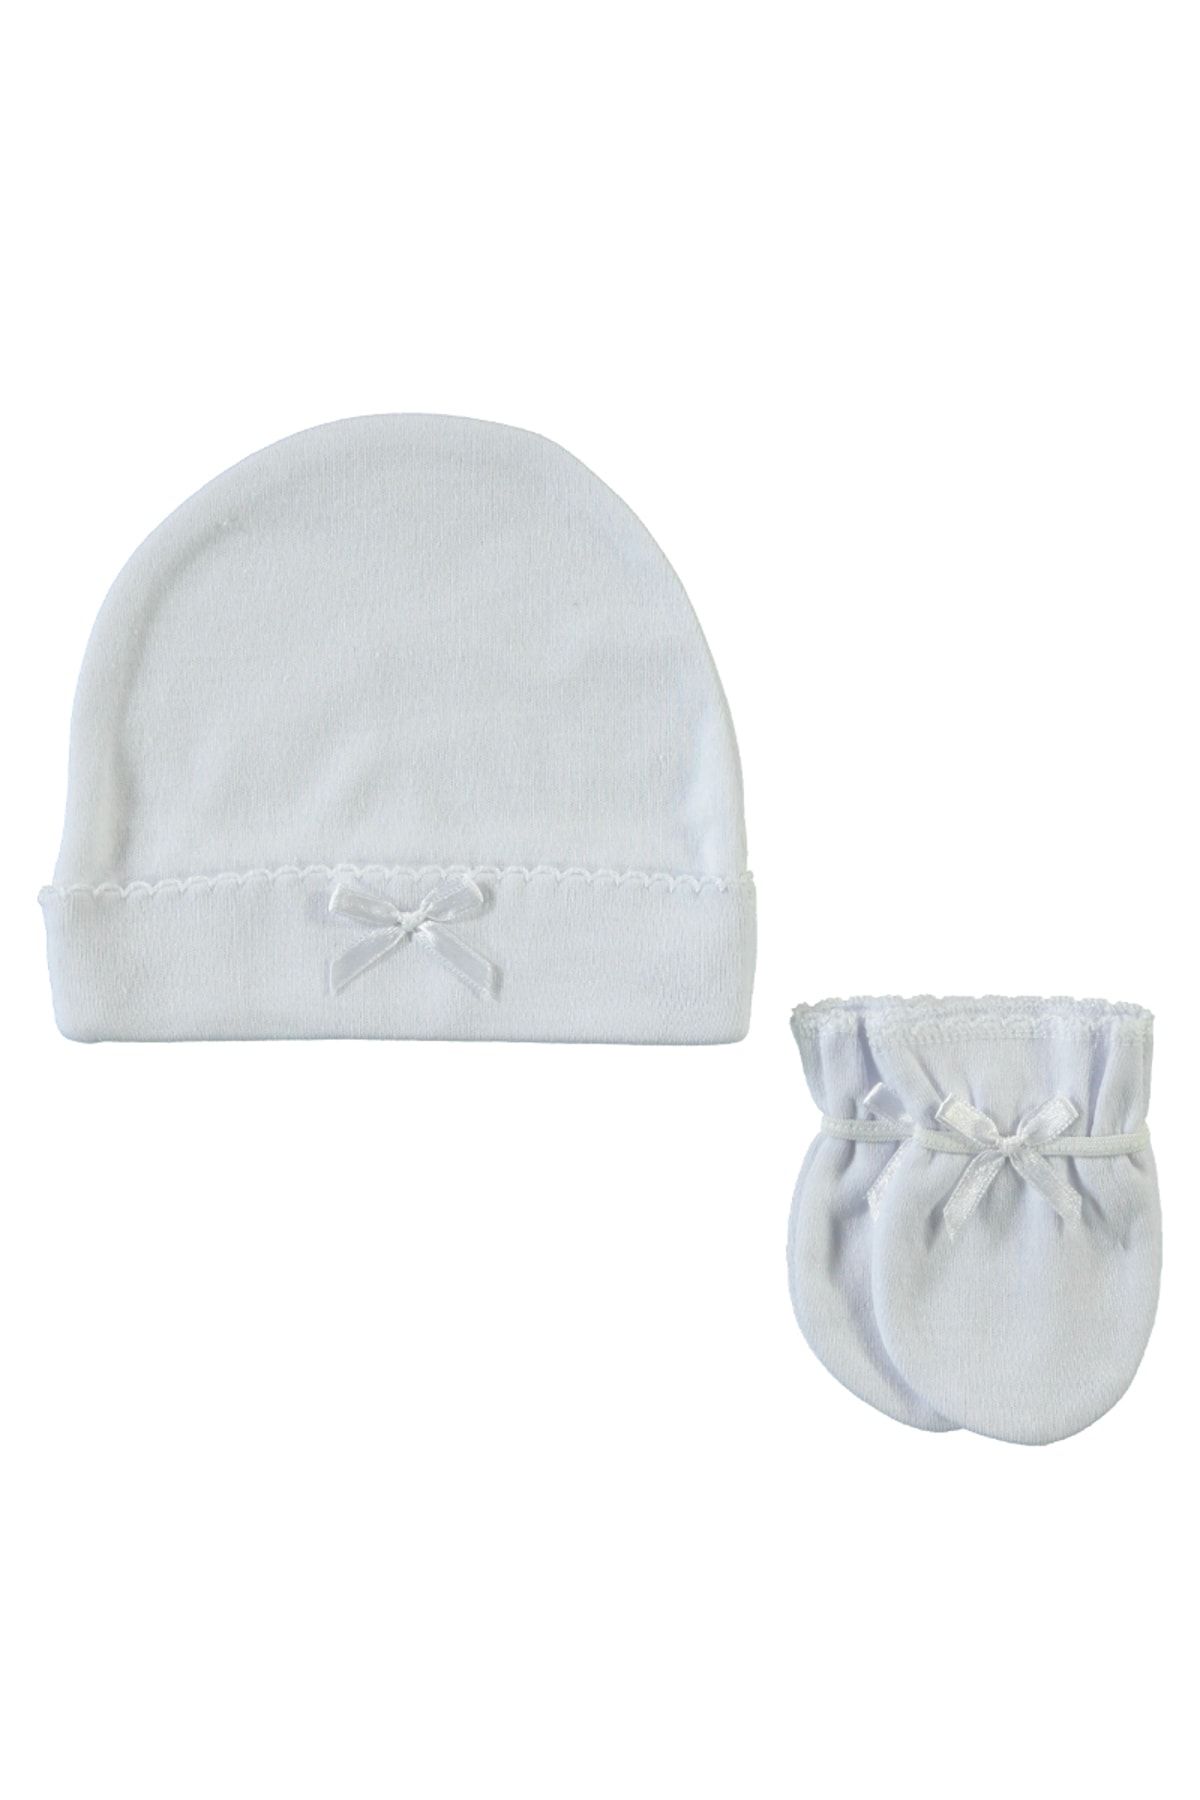 Sevi Bebe Beyaz bebek Şapka Eldiven Takımı